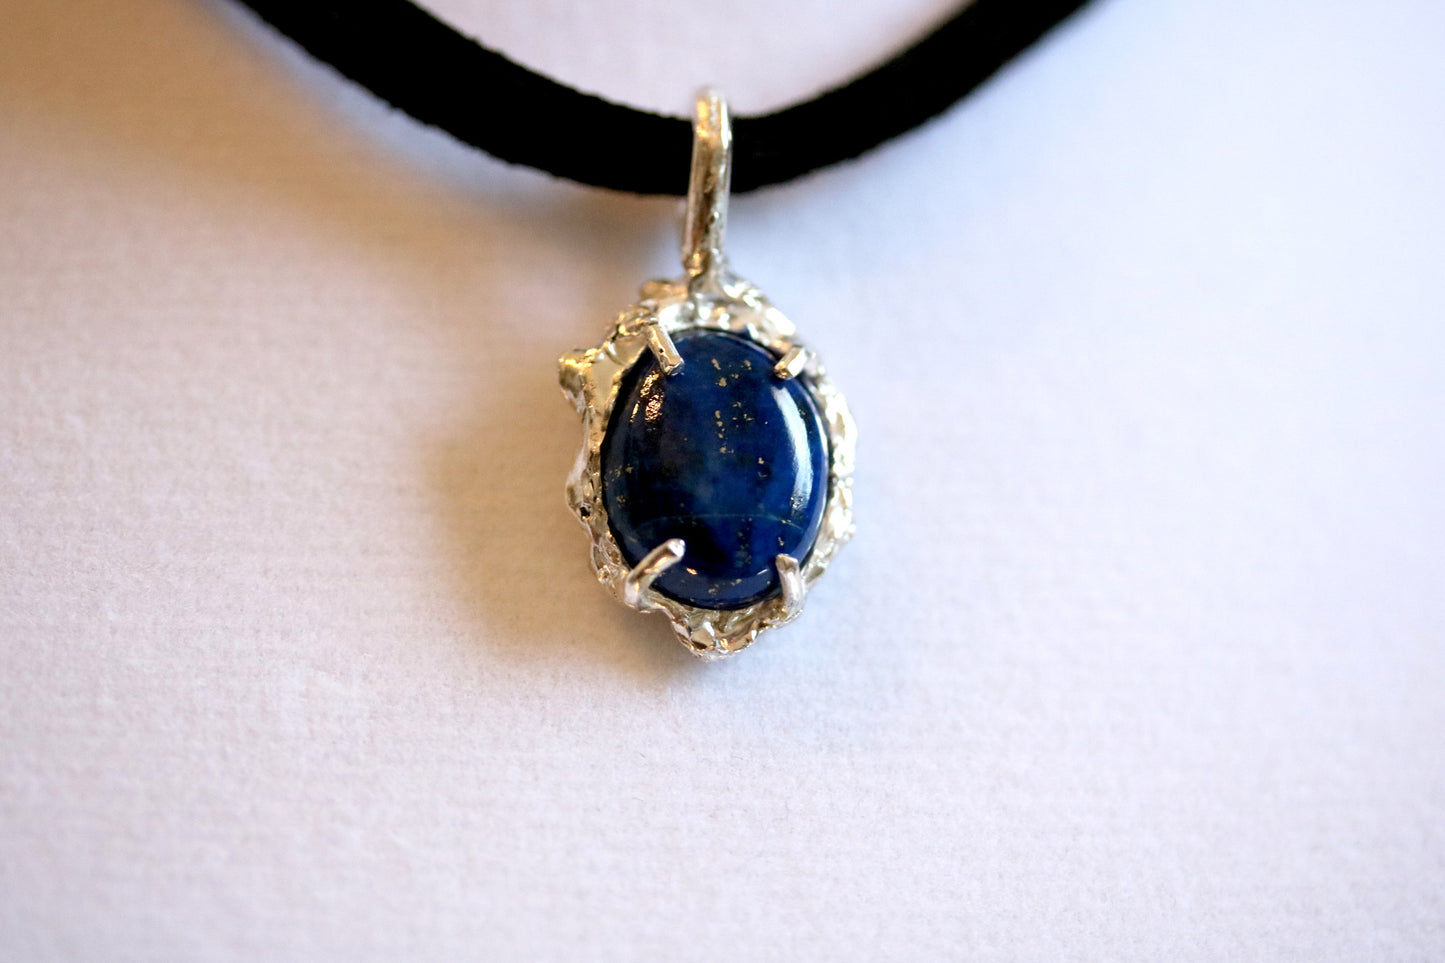 Lapis Lazuli Choker Necklace